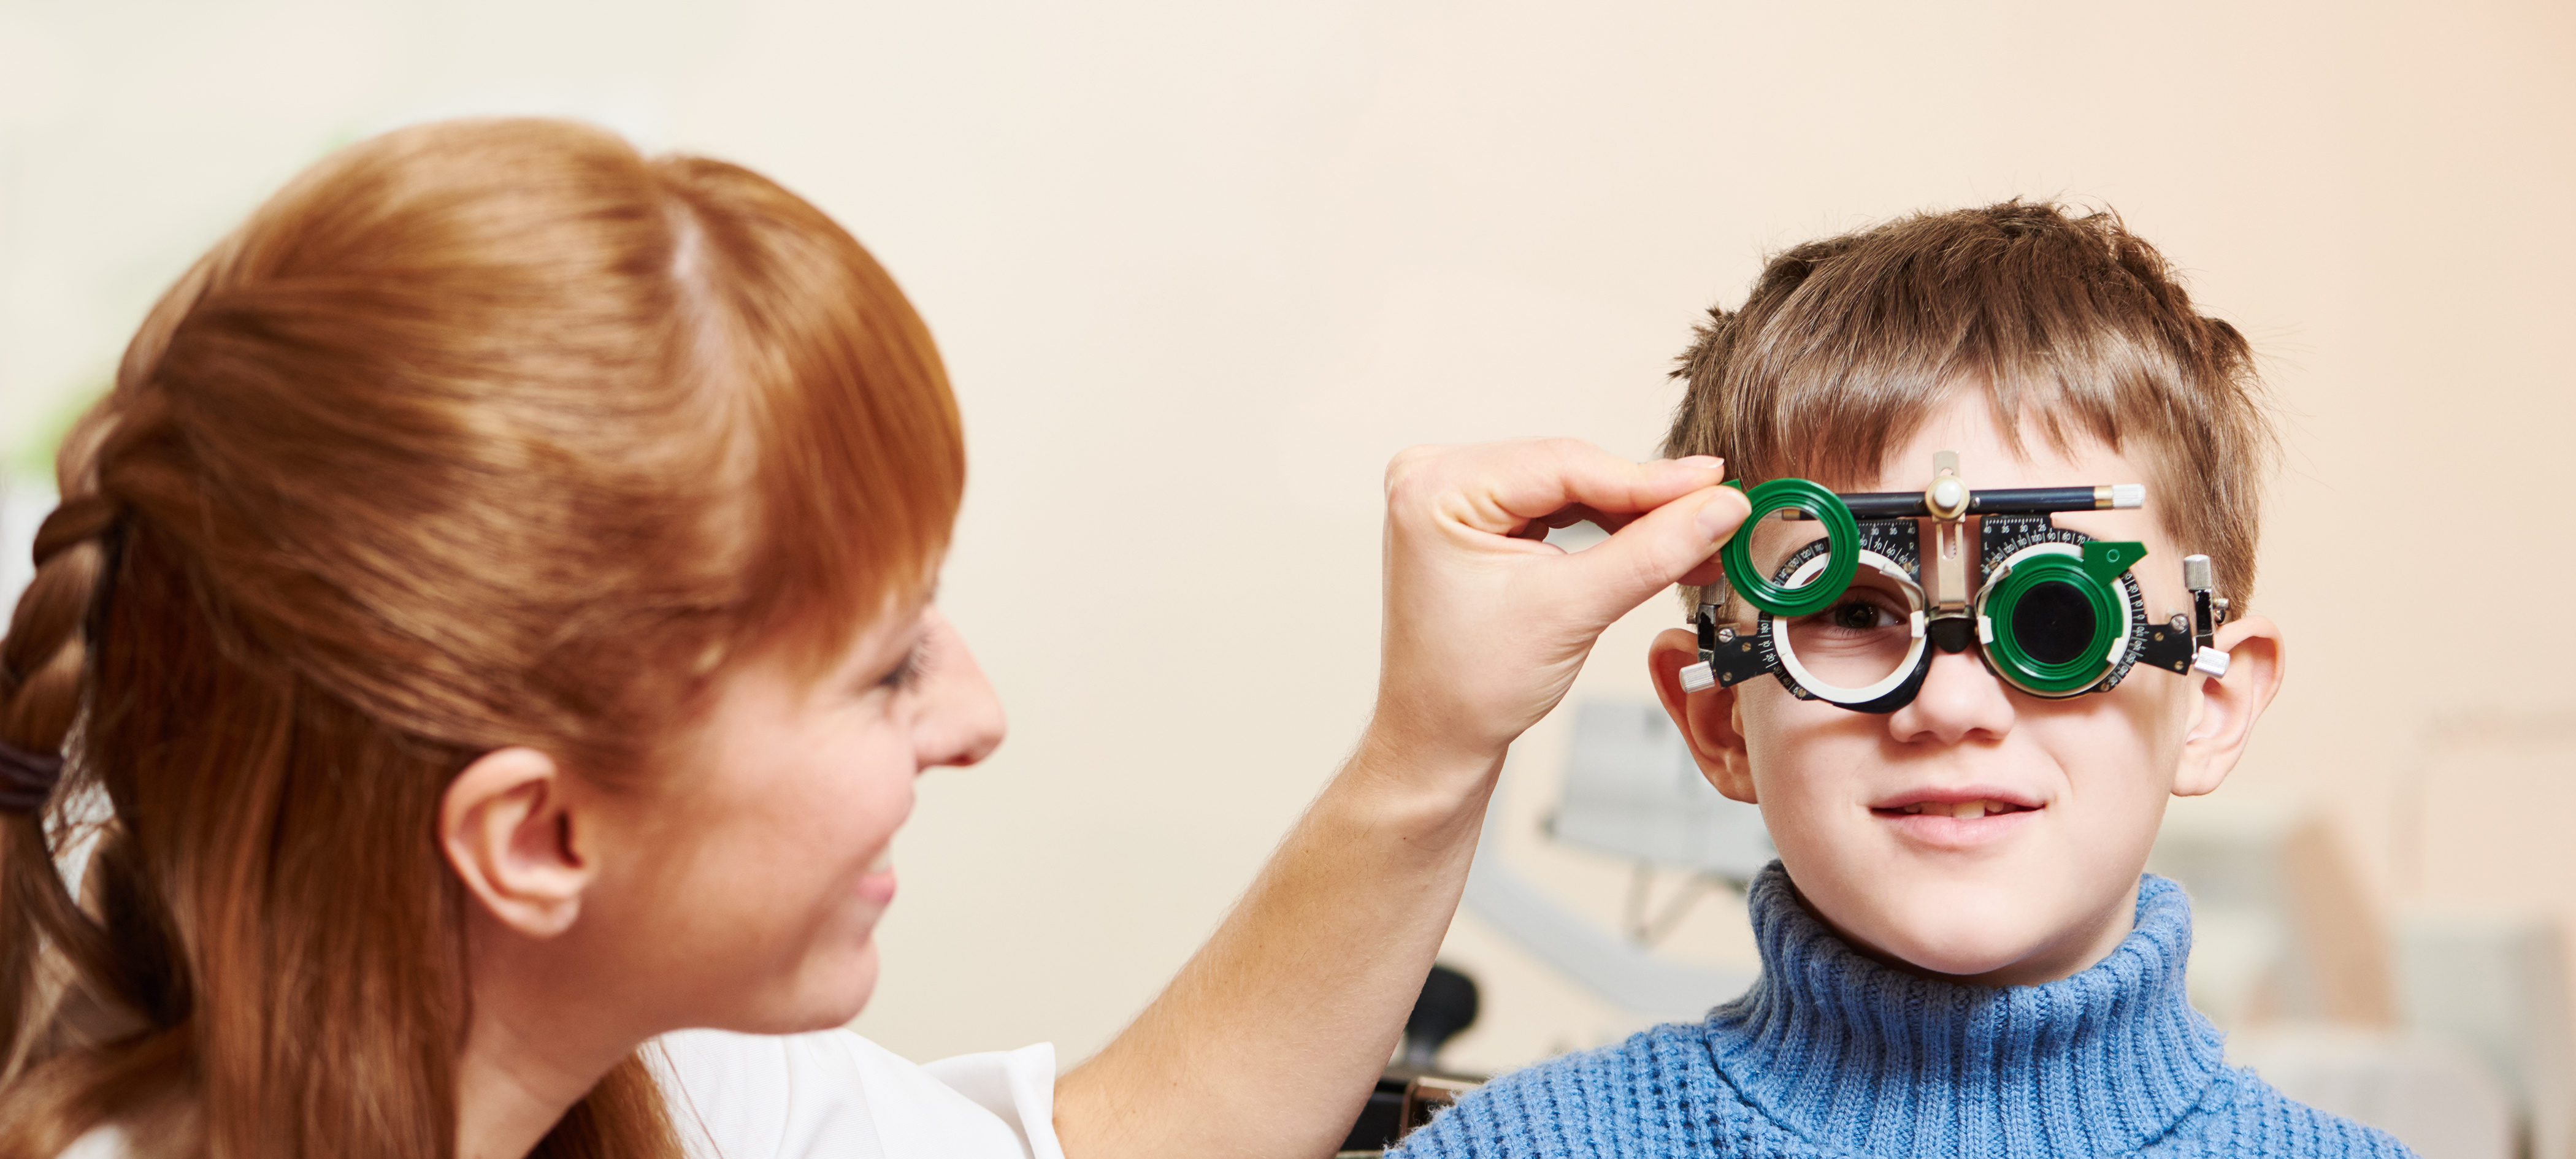 Заболевания слуха и зрения. Дети с нарушением зрения. Дети с нарушением слуха и зрения. Патология зрения у детей. Дети с глубокими нарушениями зрения.